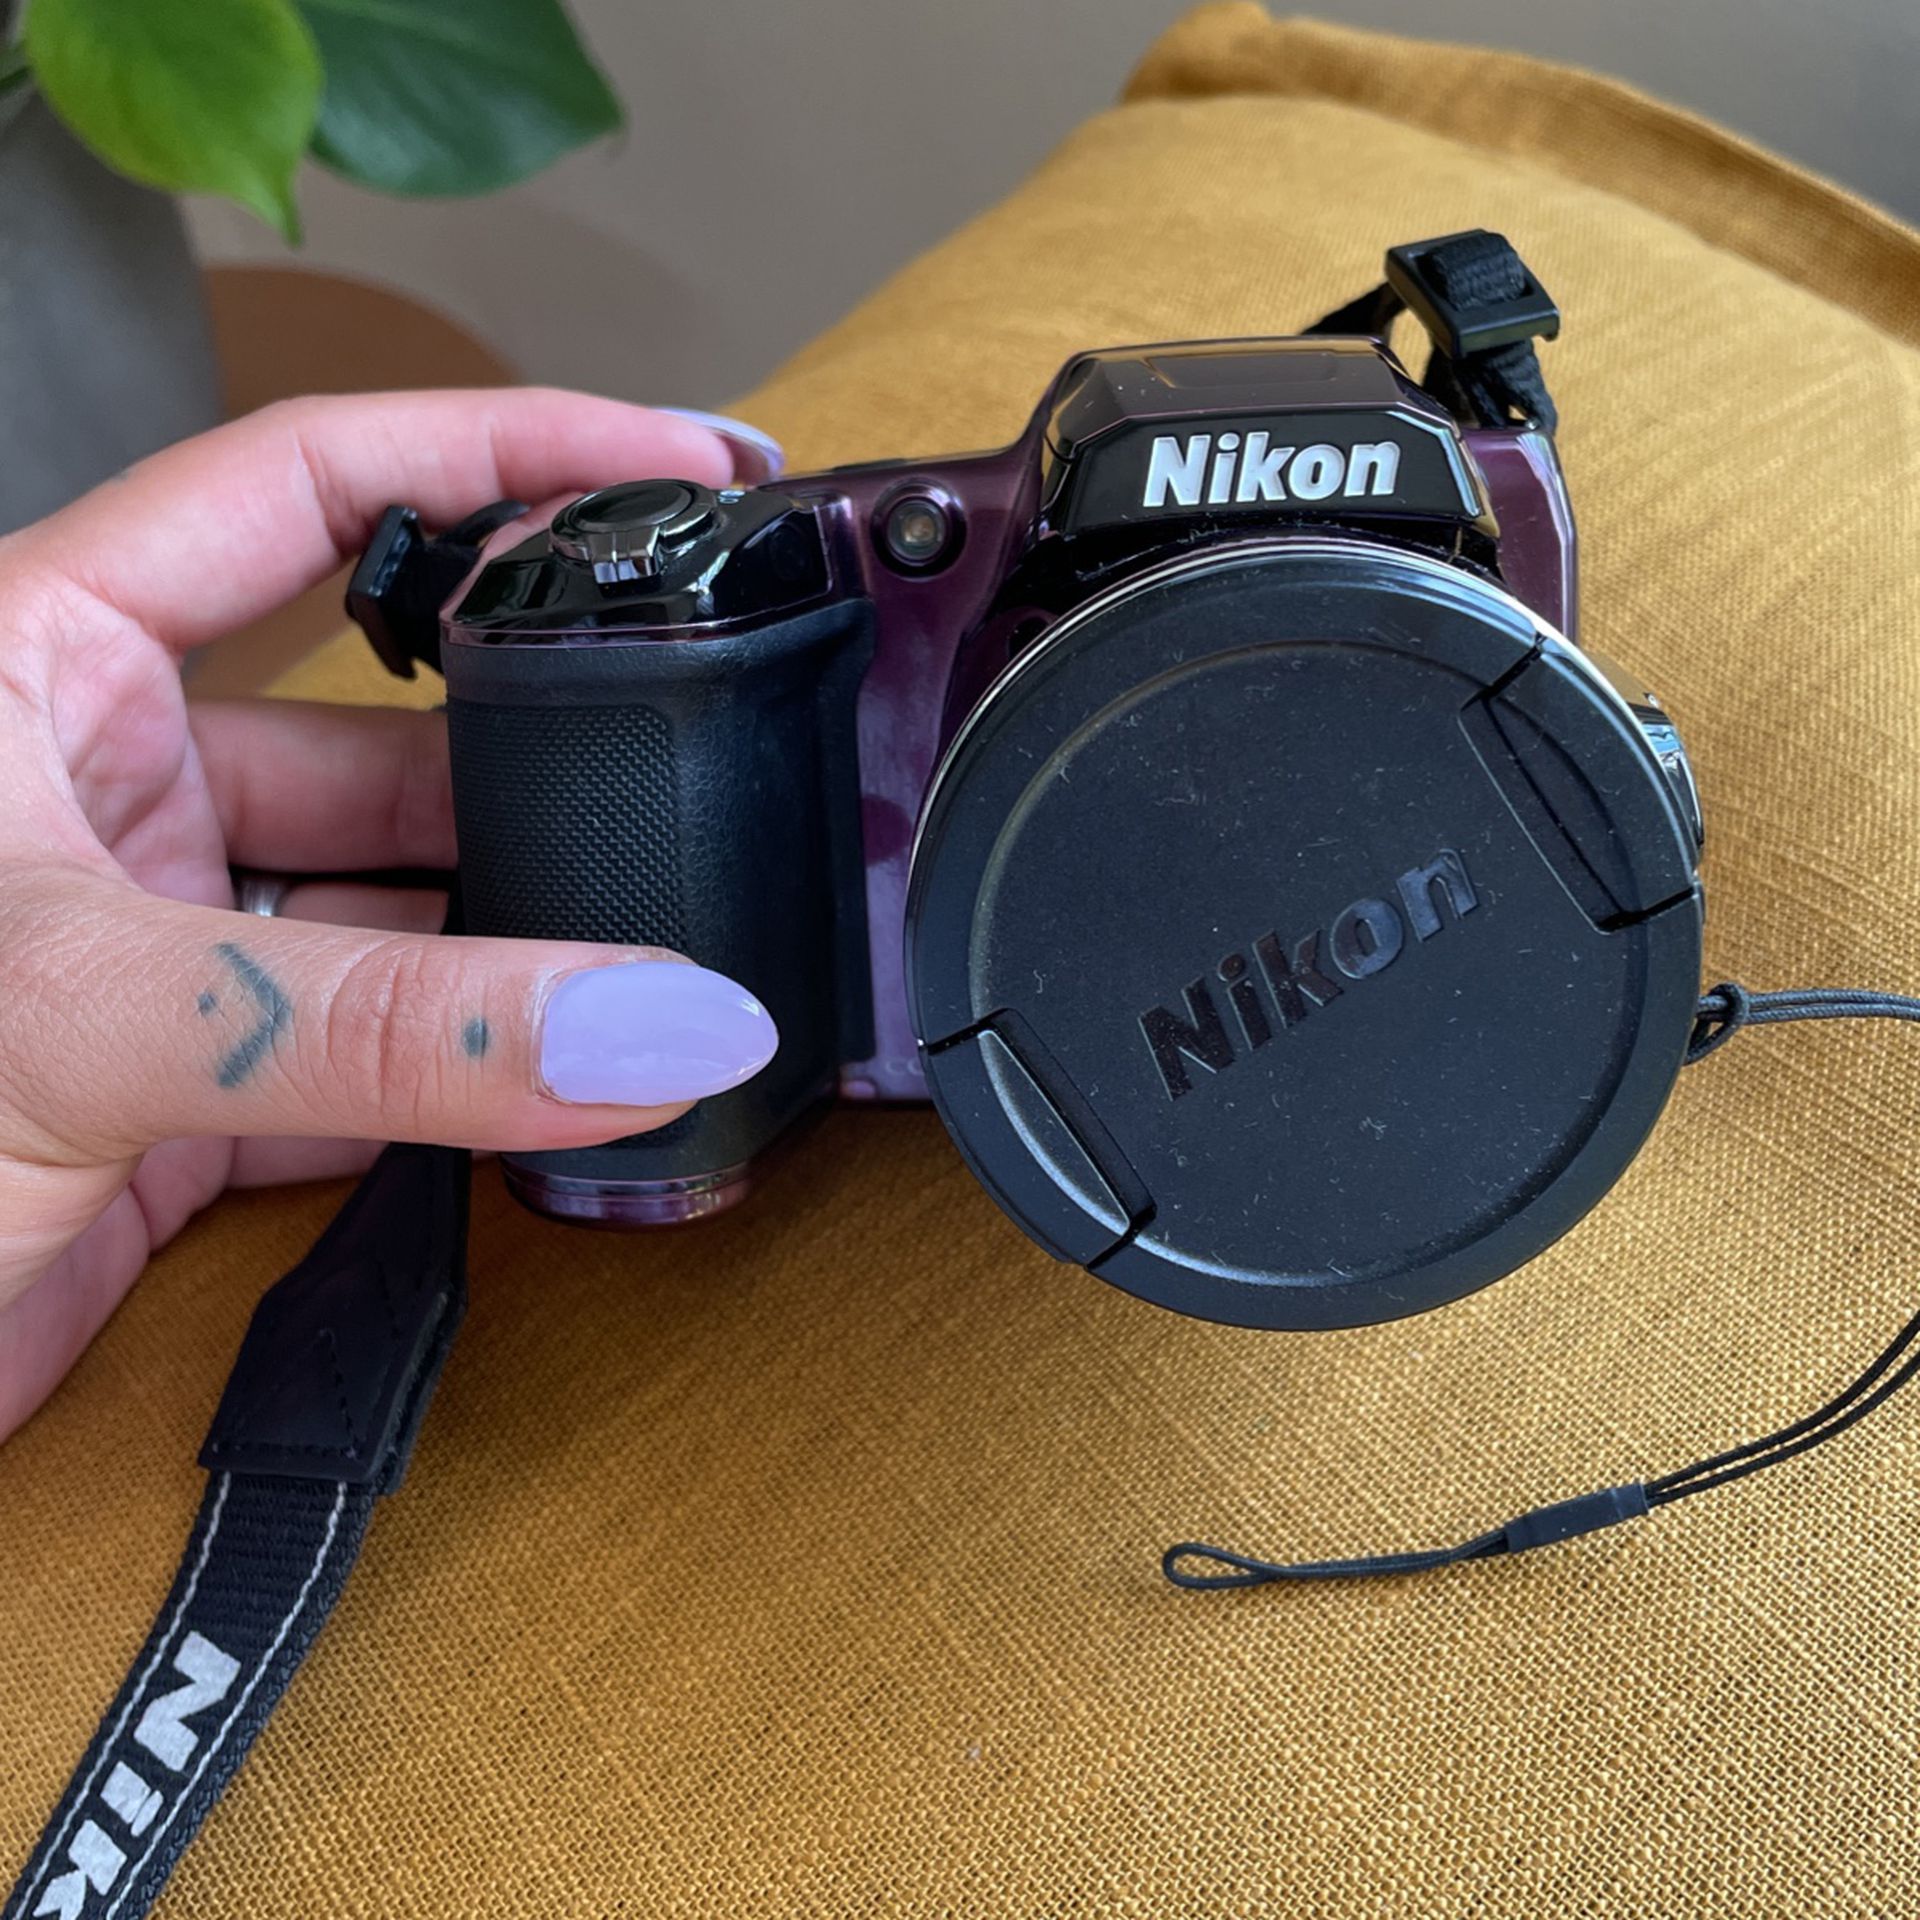 Nikon Coolpix L840 Digital Camera (purple)